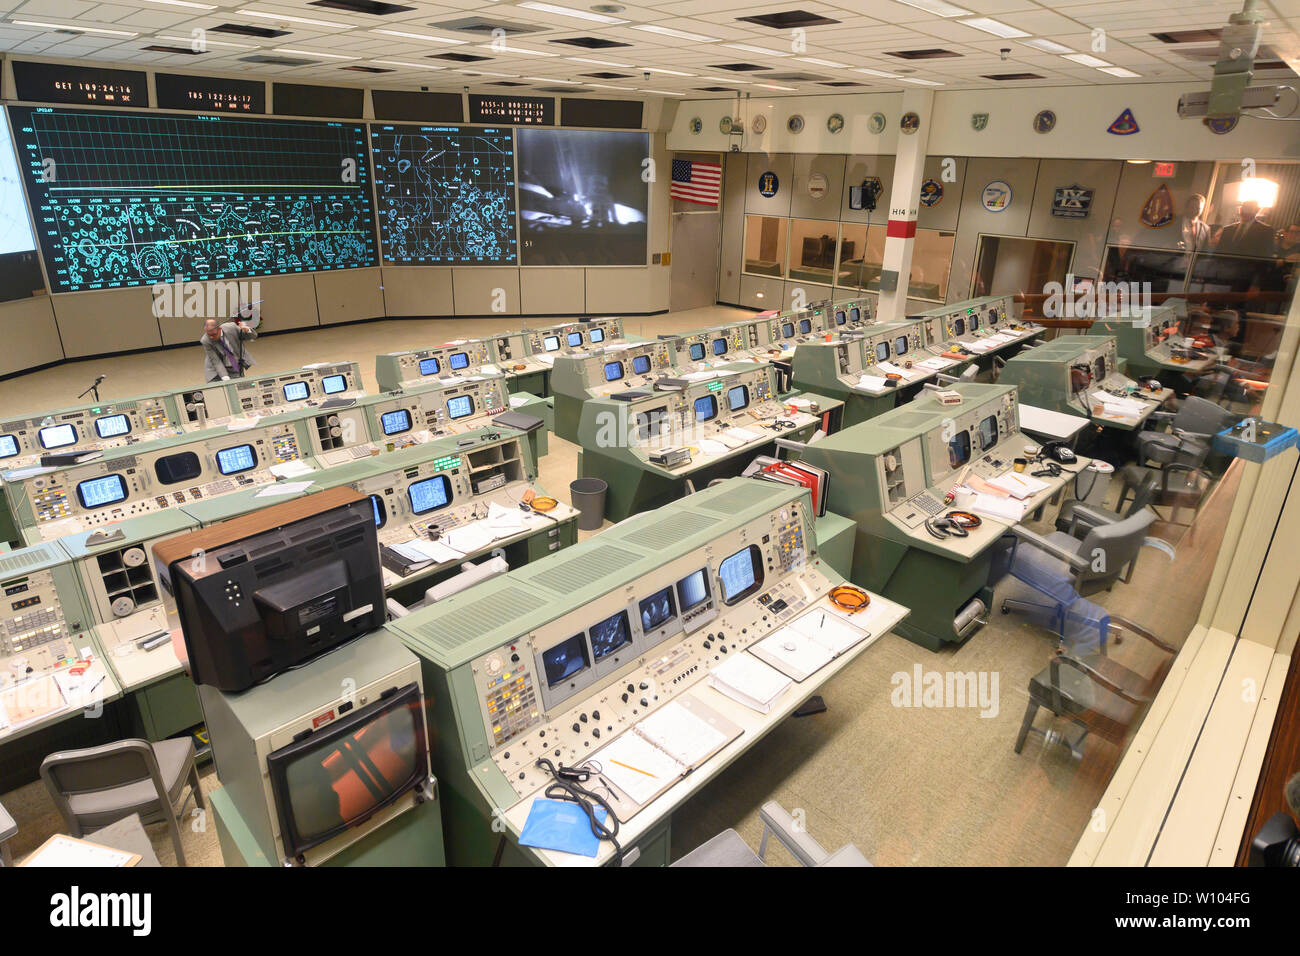 Centre de contrôle de mission au Centre spatial Johnson de la NASA Clear Lake près de Houston, Texas, récemment restauré dans sa version 1960 pour commémorer le 50e anniversaire de l'homme premiers pas sur la lune en juillet 1969 par les astronautes d'Apollo 11. Après son lancement depuis le Centre spatial Kennedy en Floride, l'alunissage d'Apollo 11 et le retour sur terre était contrôlé à partir de ce site. Banque D'Images